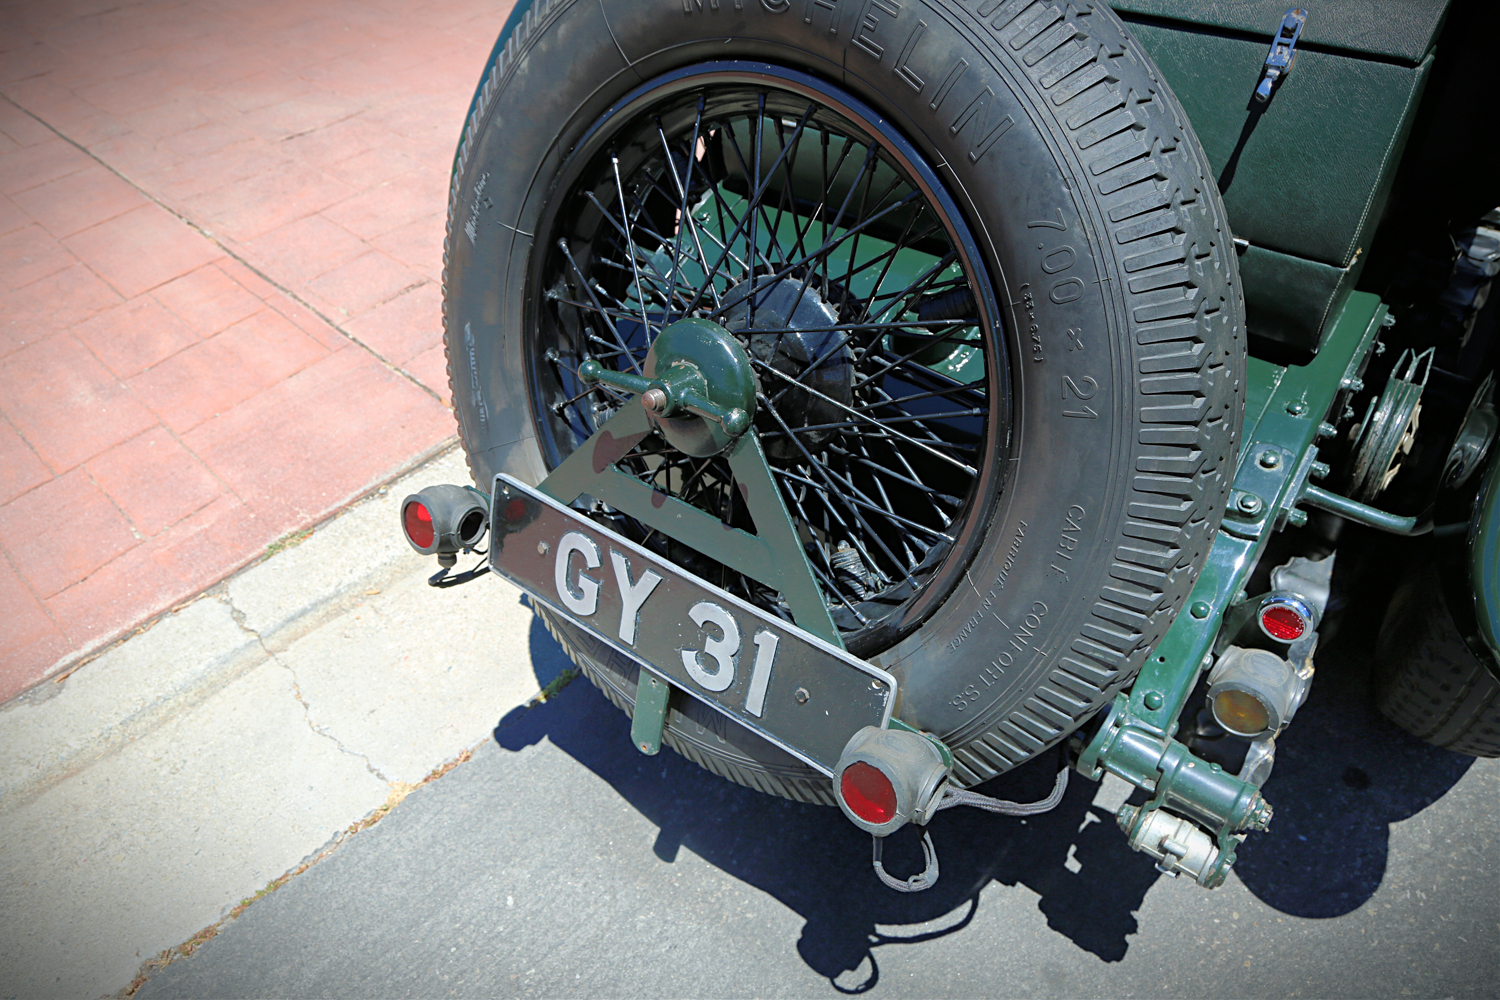 1931 Bentley 8 Litre Sport Touring